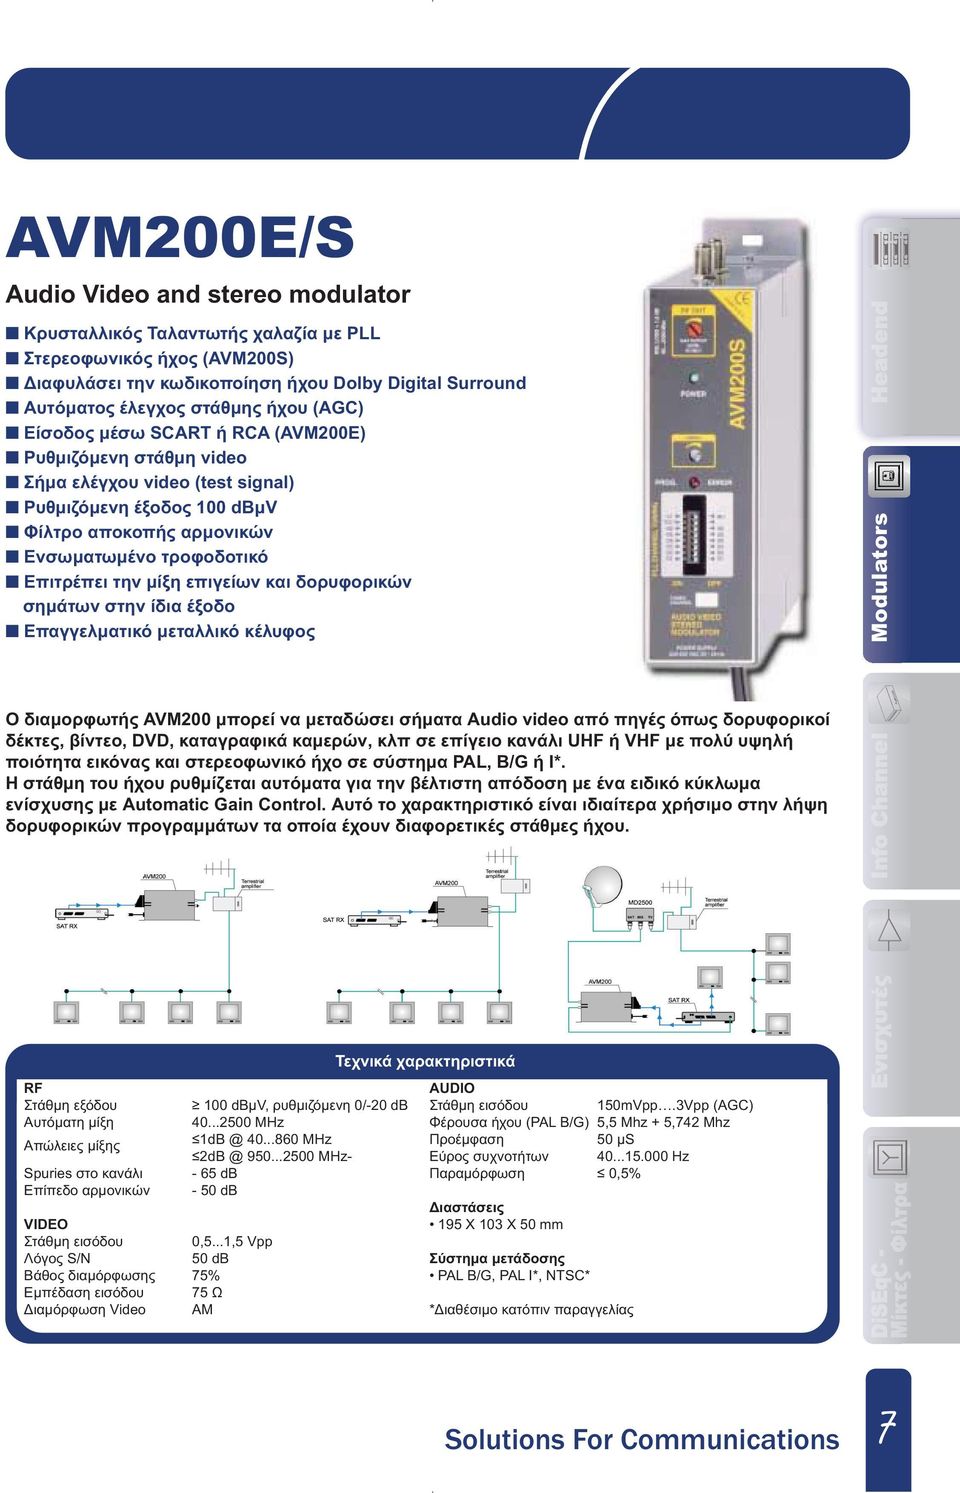 επιγείων και δορυφορικών σηµάτων στην ίδια έξοδο Επαγγελµατικό µεταλλικό κέλυφος Modulators Ο διαµορφωτής AVM200 µπορεί να µεταδώσει σήµατα Audio video από πηγές όπως δορυφορικοί δέκτες, βίντεο, DVD,